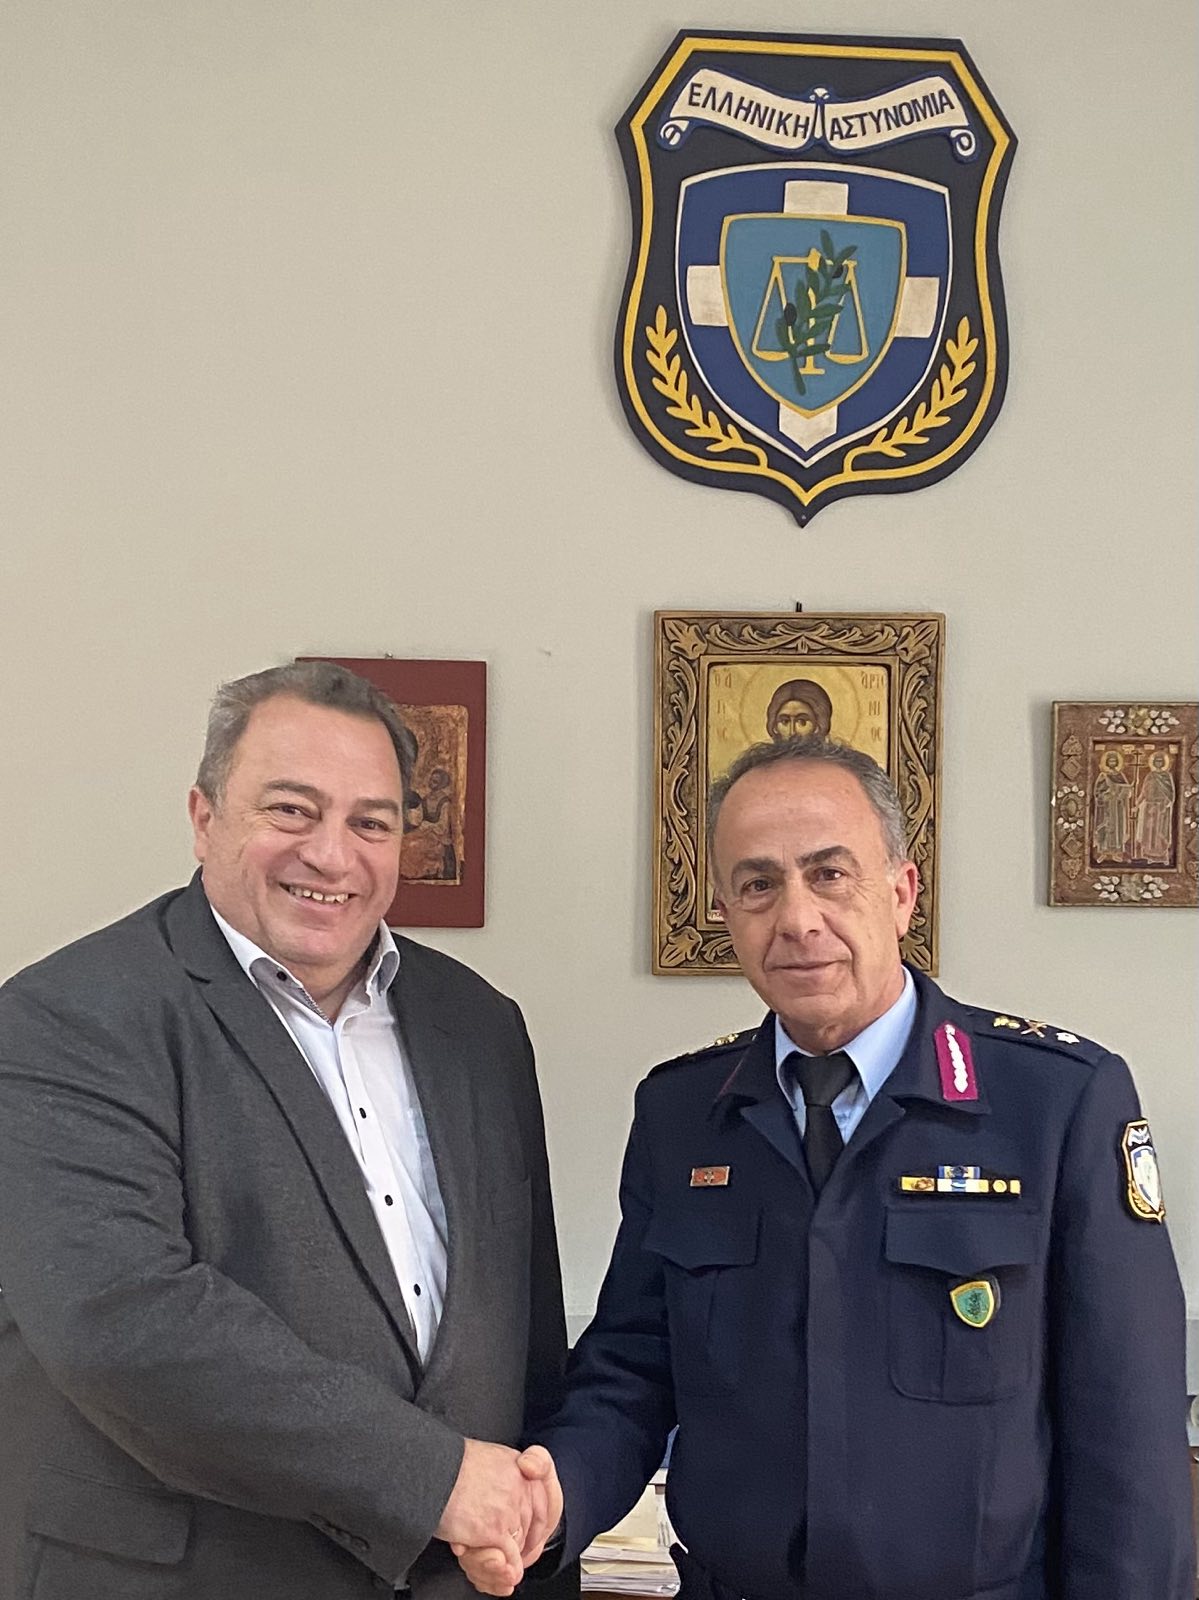 Κοντά στους Αστυνομικούς της Ροδόπης ο βουλευτης της ΝΔ Ευρυπίδης Στυλιανίδης